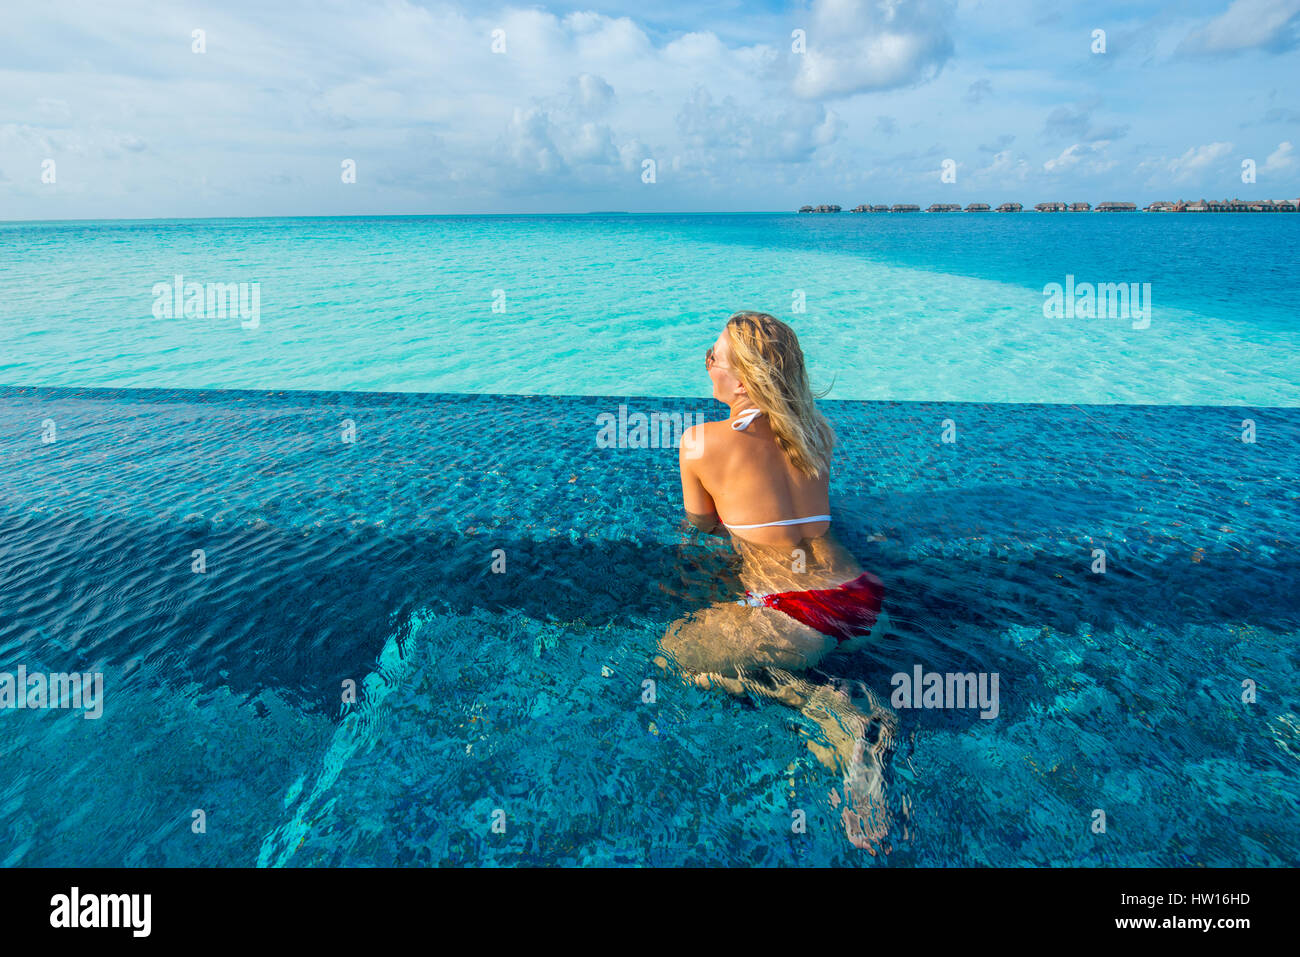 Maldive Rangali Island. Conrad Hilton Resort. La donna in una piscina infinity sull'oceano. (MR) Foto Stock